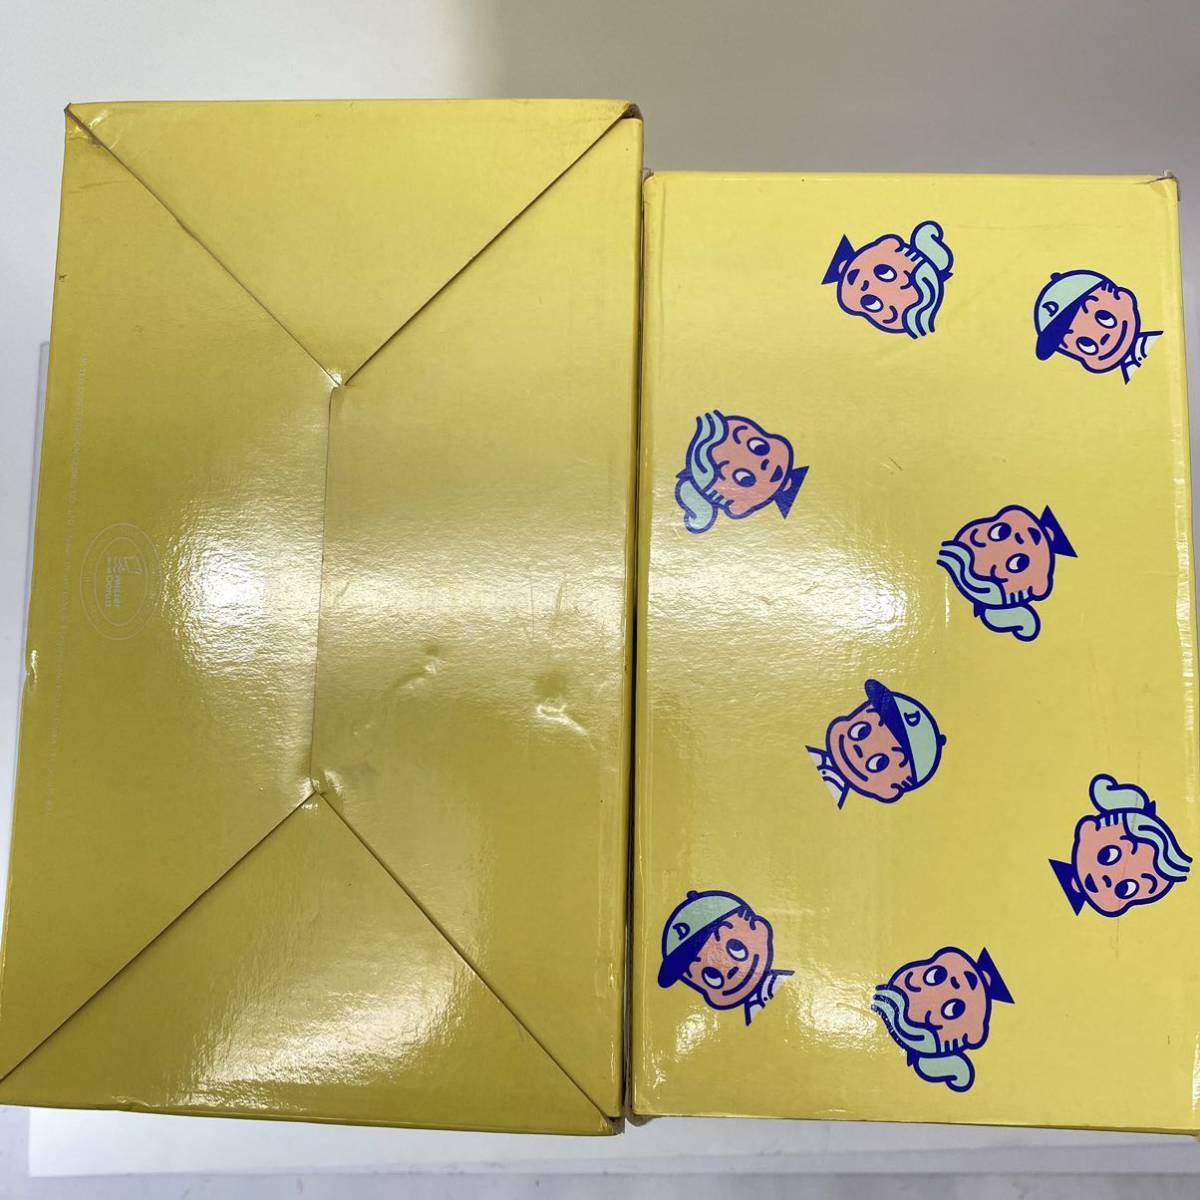  Mister Donut бумага коробка выдвижной ящик бардачок желтый цвет желтый . рисовое поле . retro pop Novelty подлинная вещь текущее состояние товар 0205